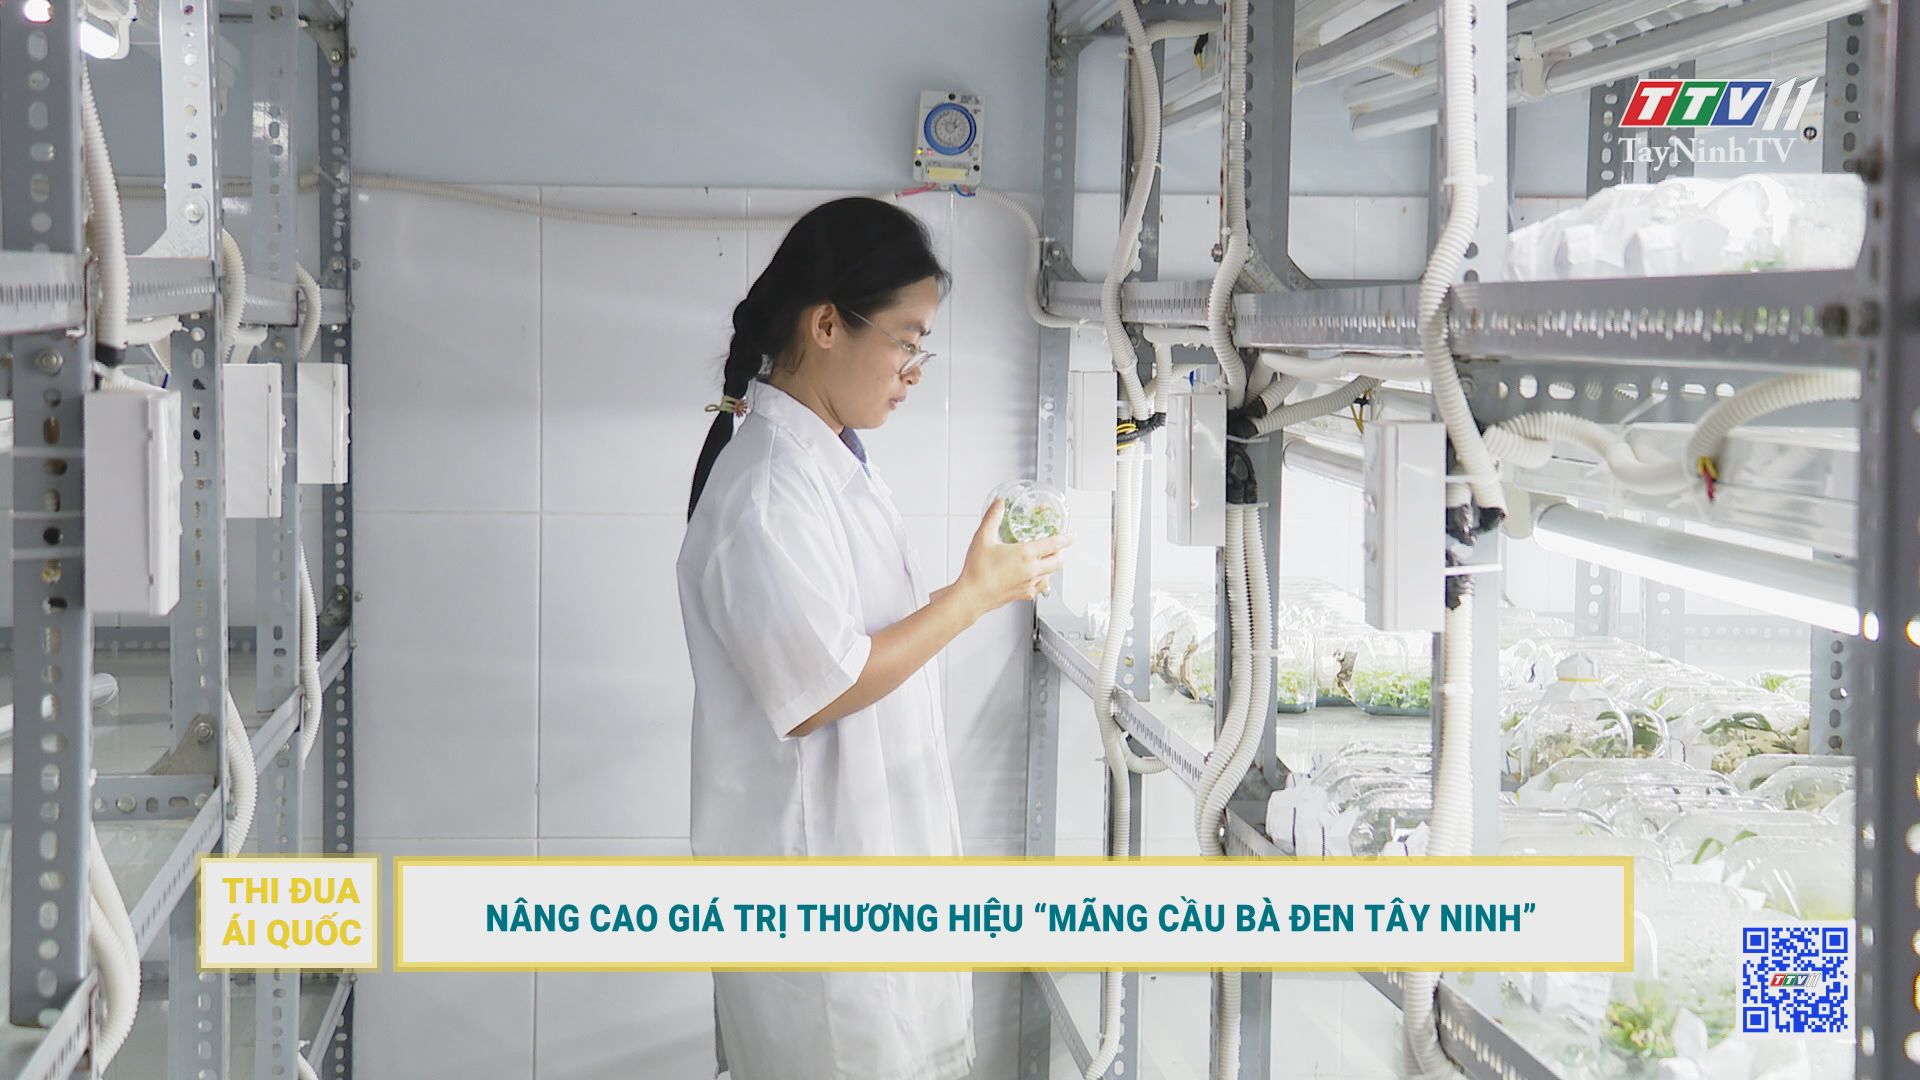 Nâng cao giá trị thương hiệu “Mãng cầu Bà Đen Tây Ninh” | Thi đua ái quốc | TayNinhTV